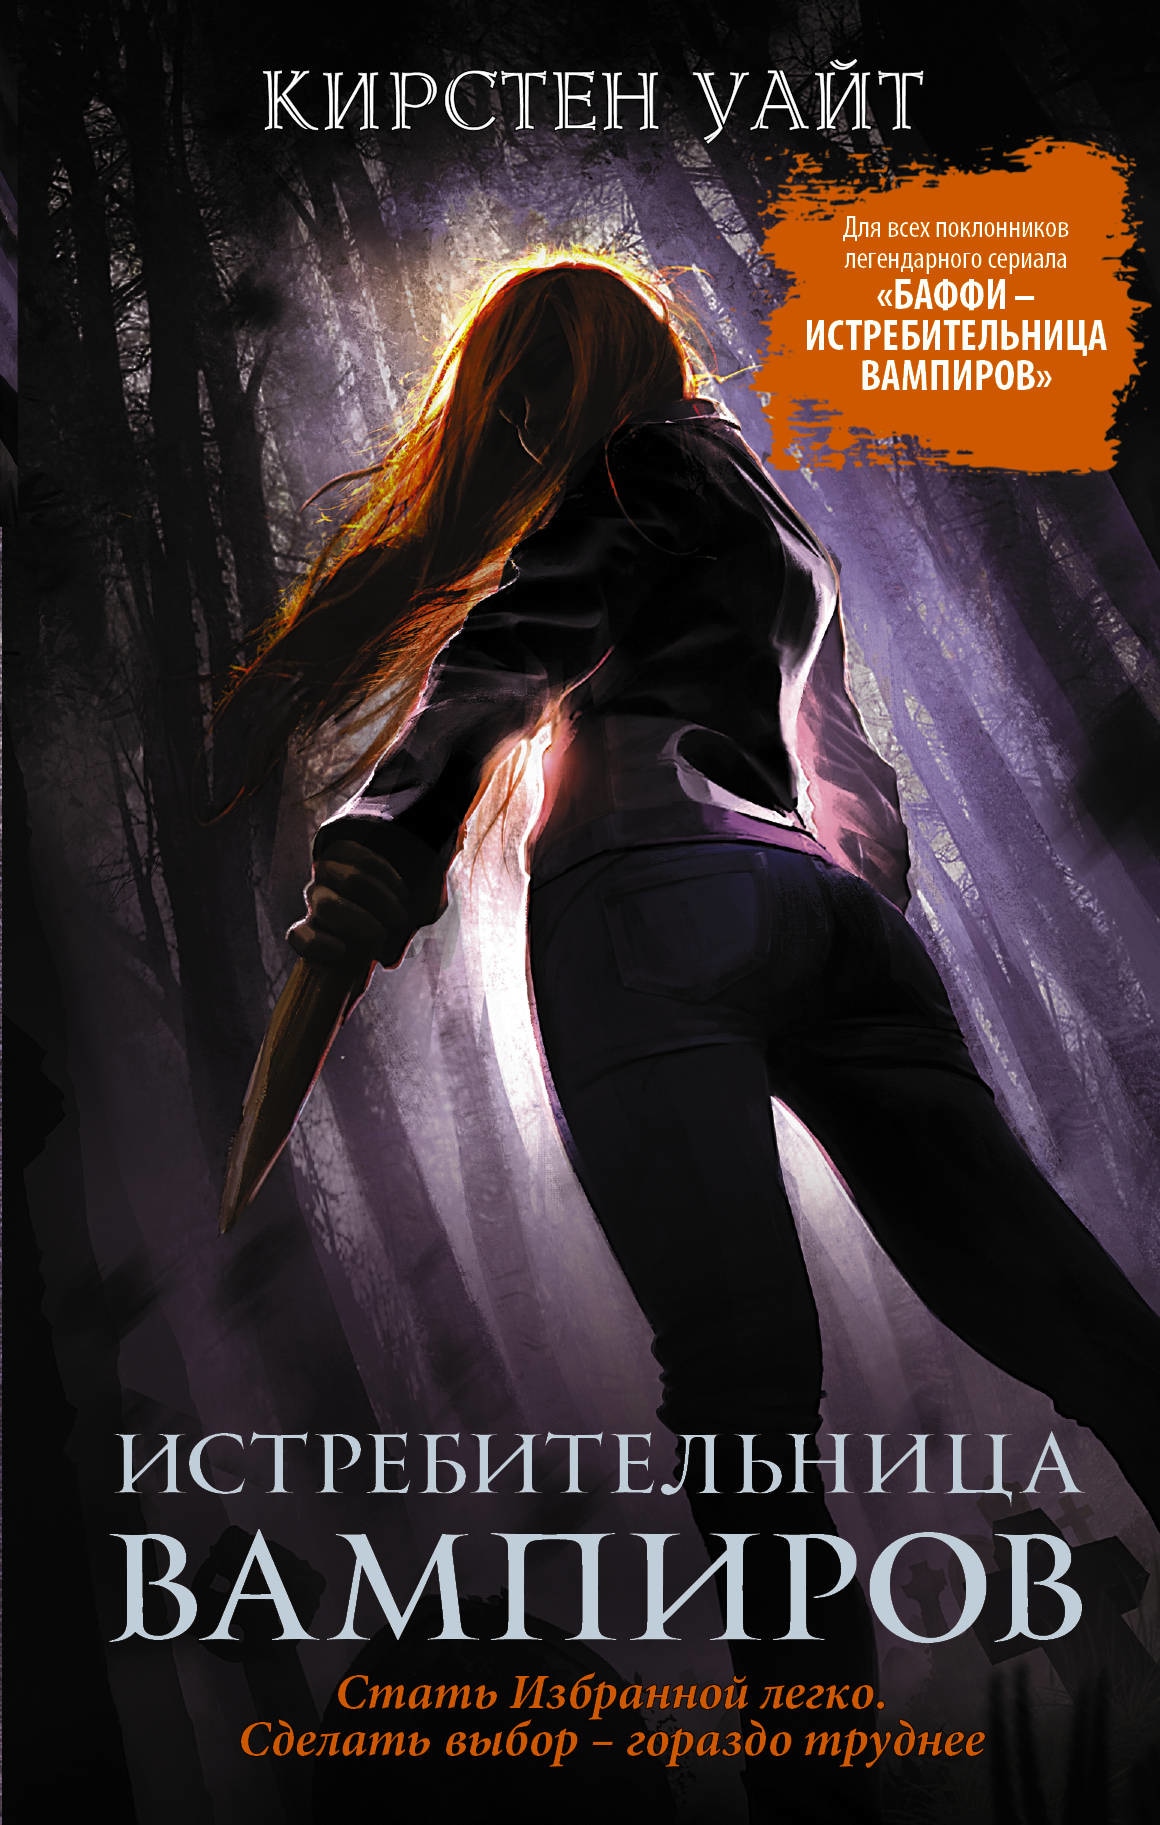 Book “Истребительница вампиров” by Кирстен Уайт — July 15, 2019